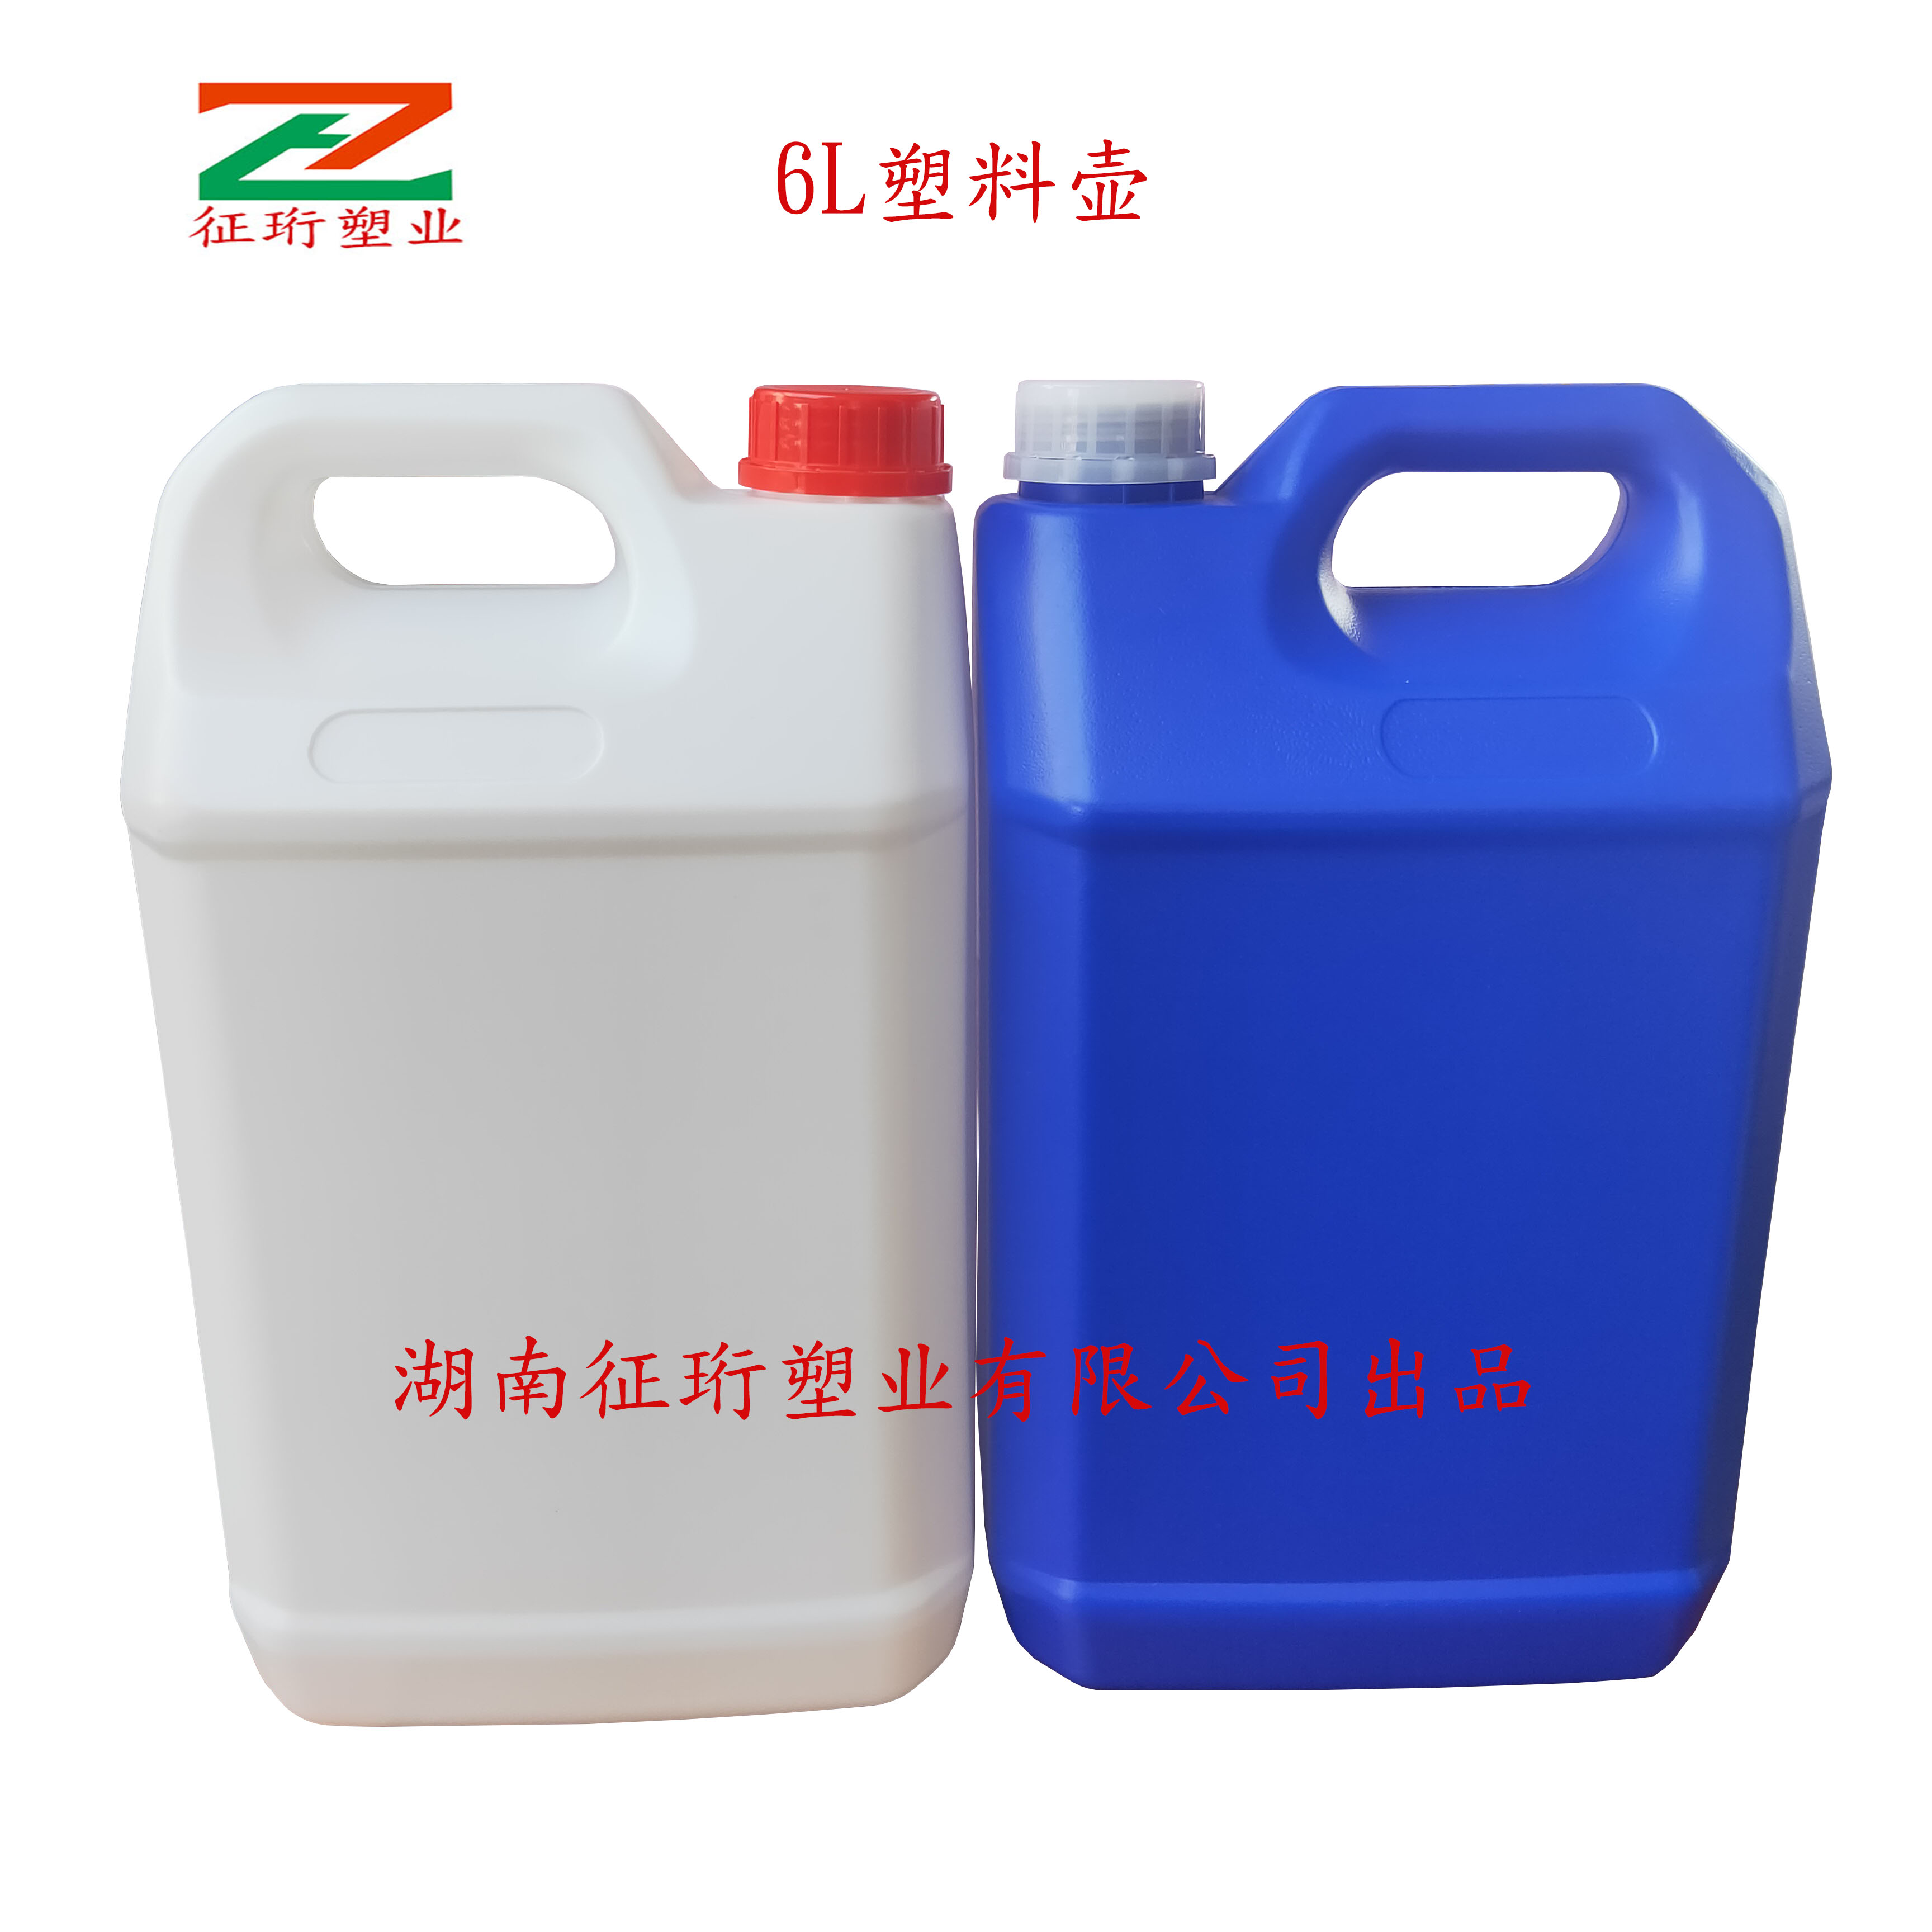 株洲25KG化工桶、渌口25L塑料桶、湘潭25升塑料桶、易俗河25KG塑料桶